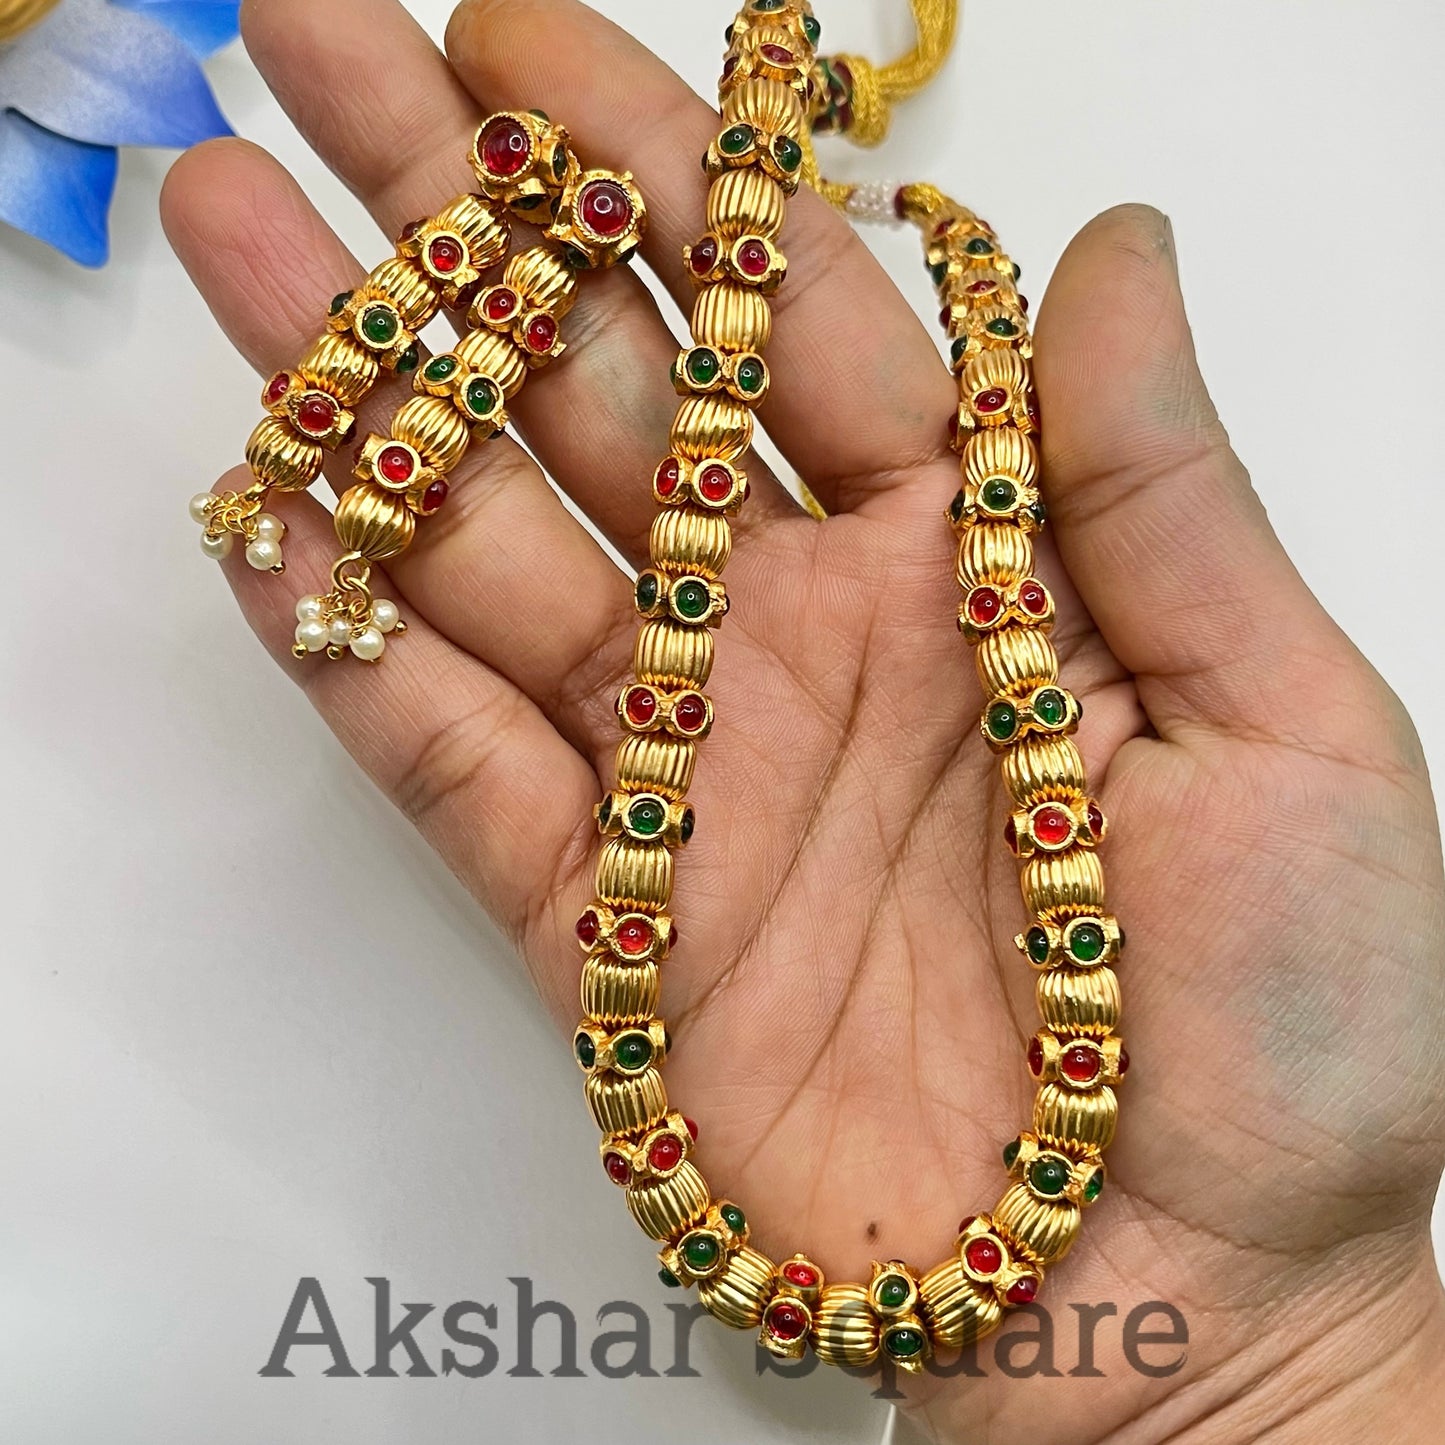 Antique Beads Necklace Set